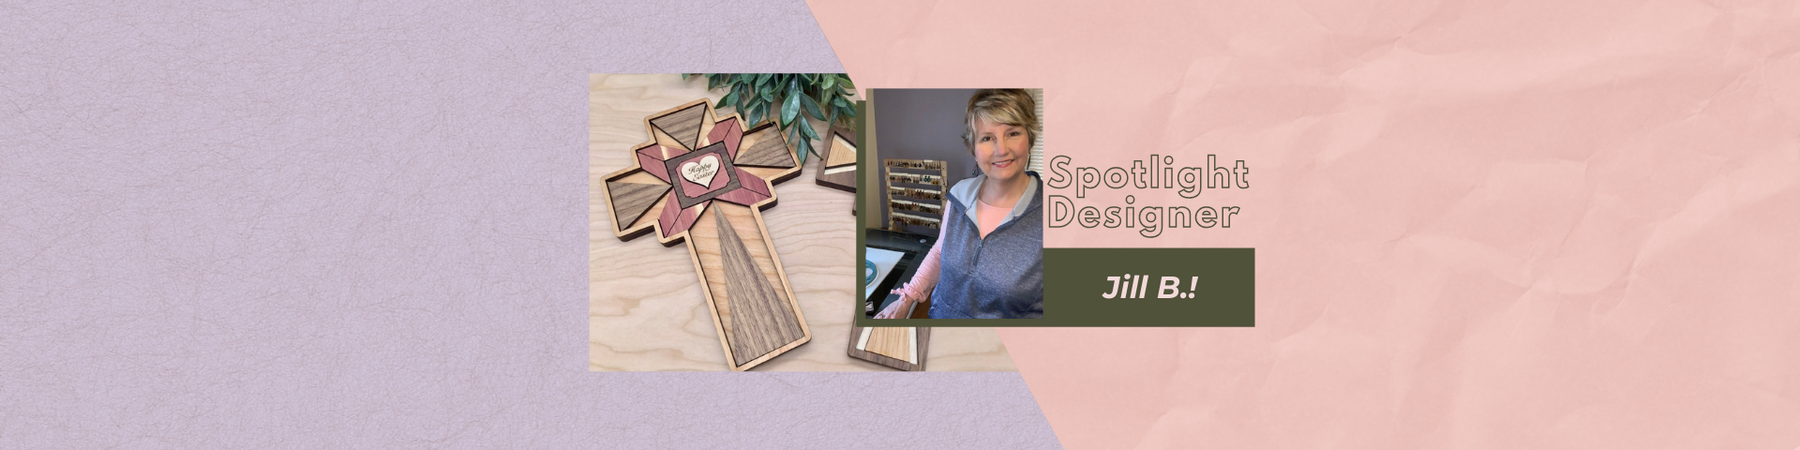 Spotlight Designer! Jill B.!